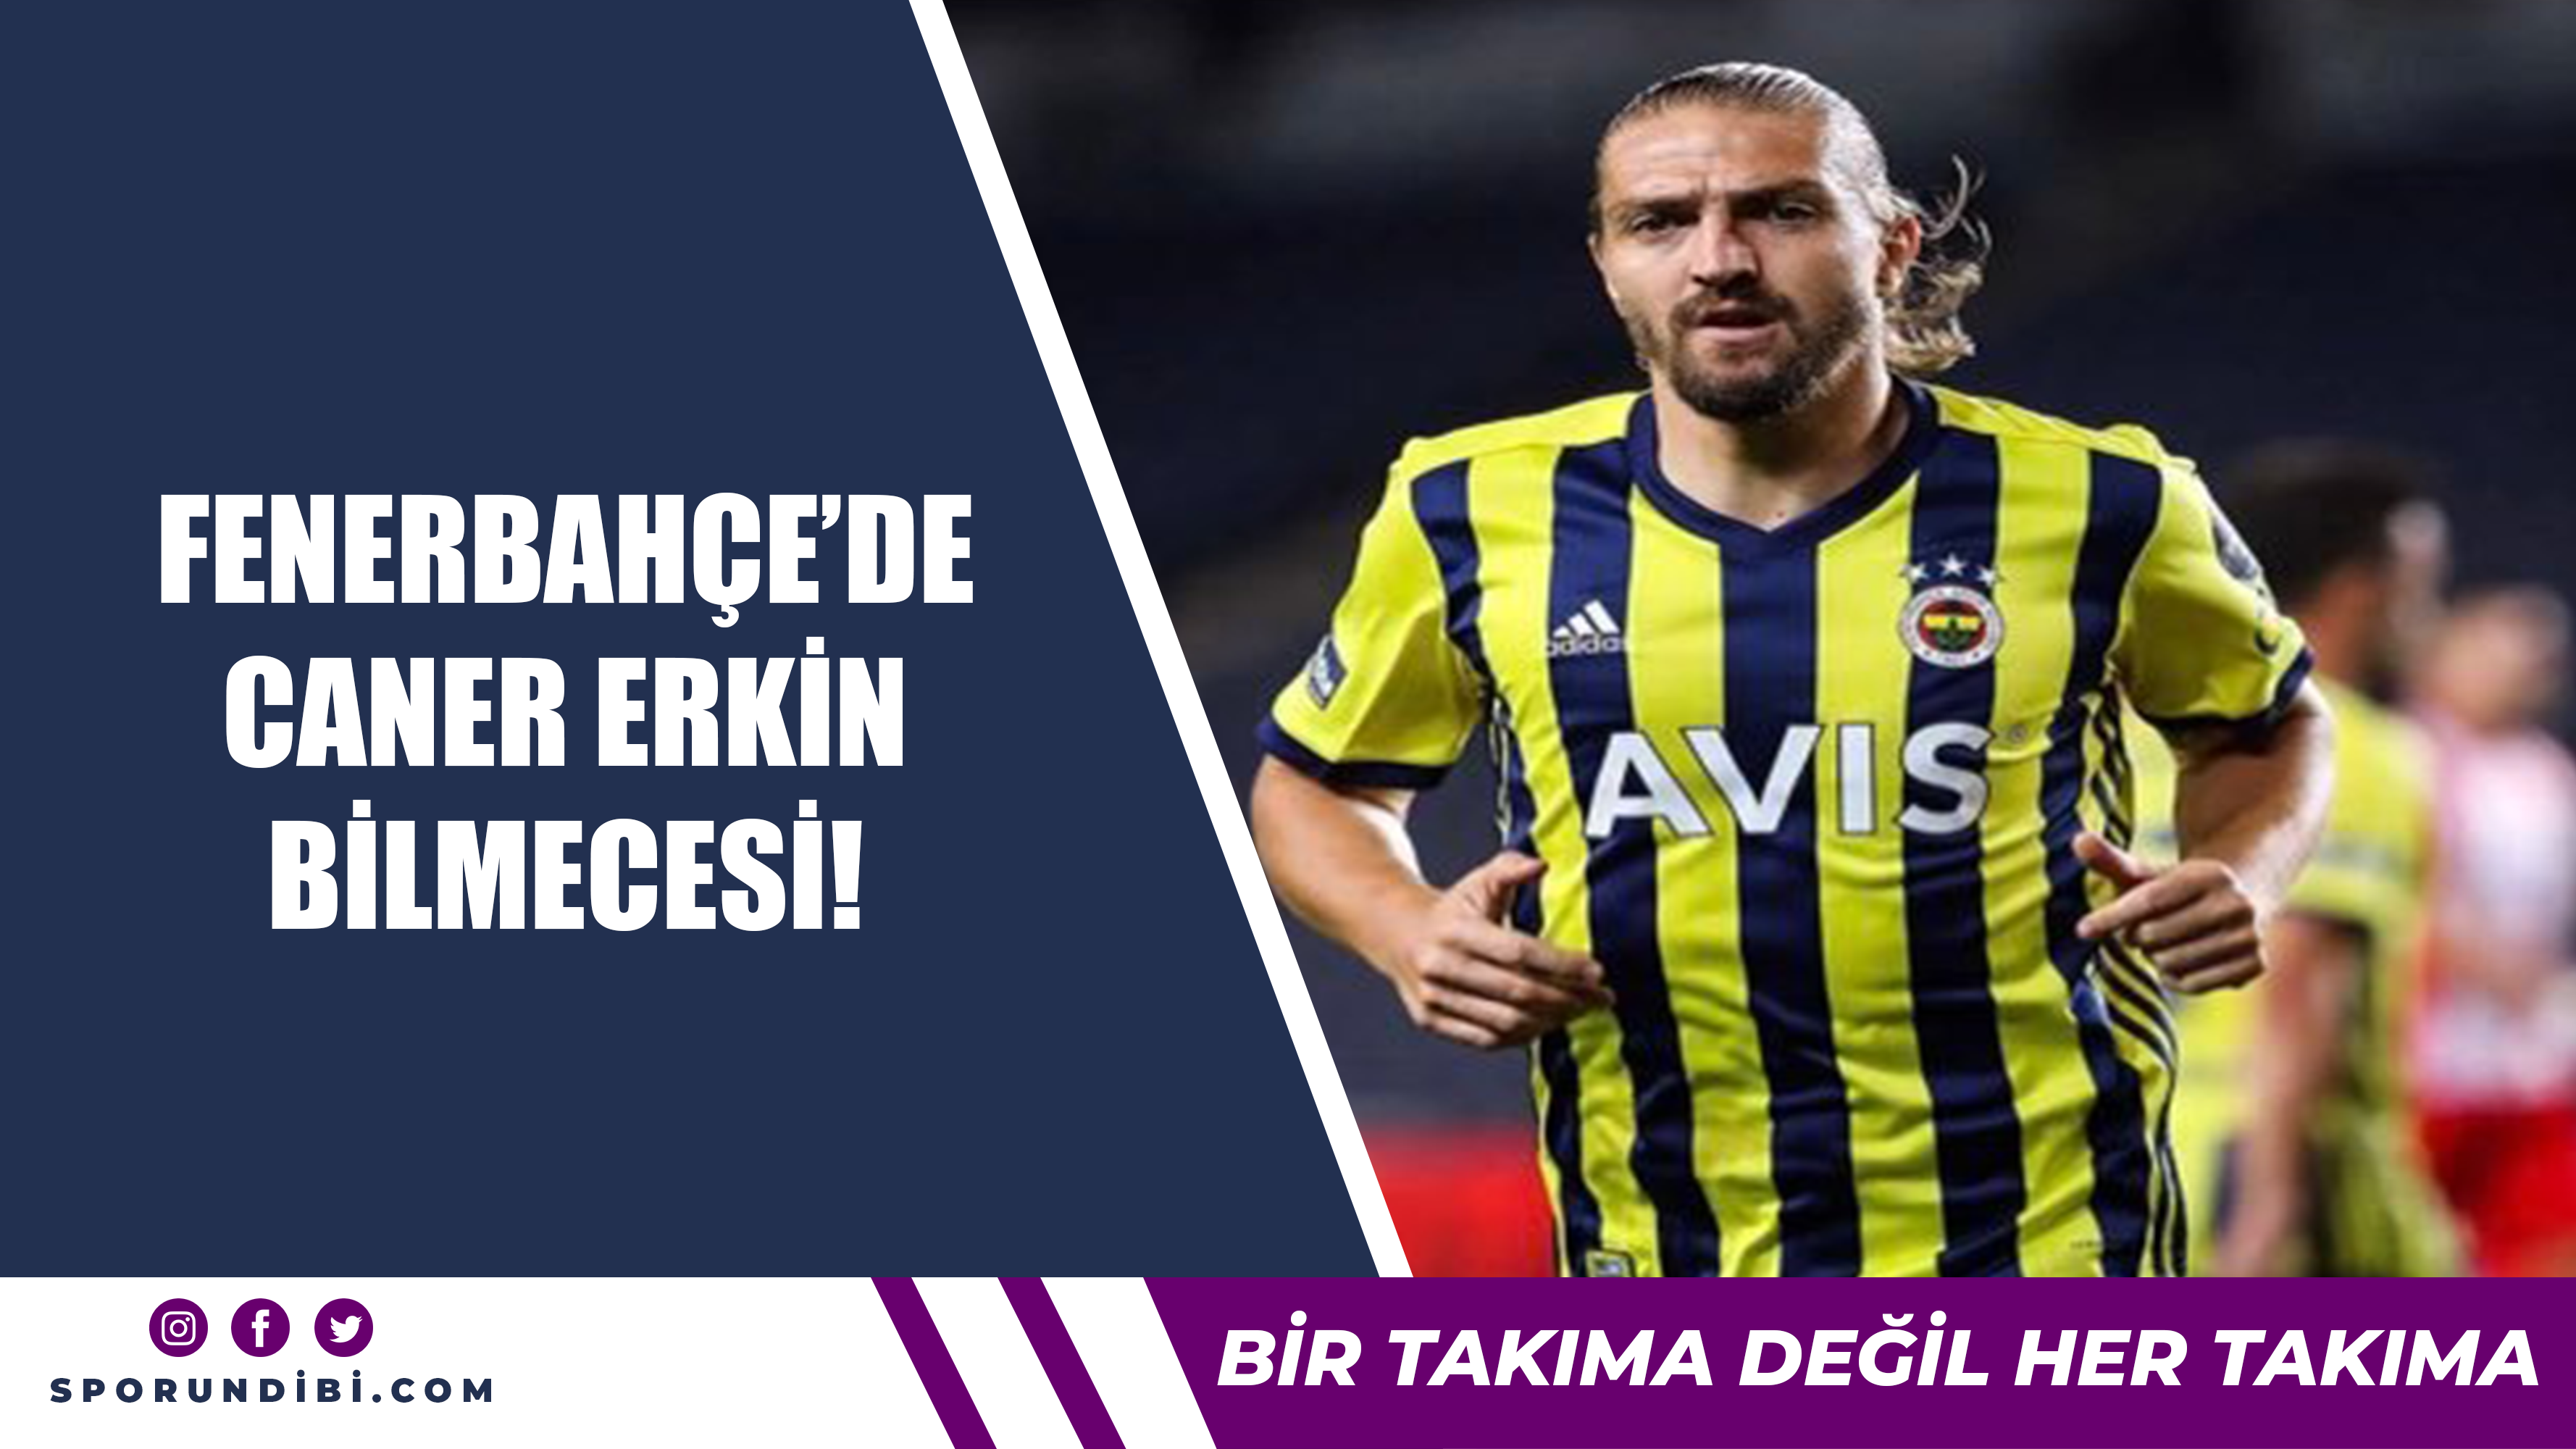 Fenerbahçe'de Caner Erkin bilmecesi!